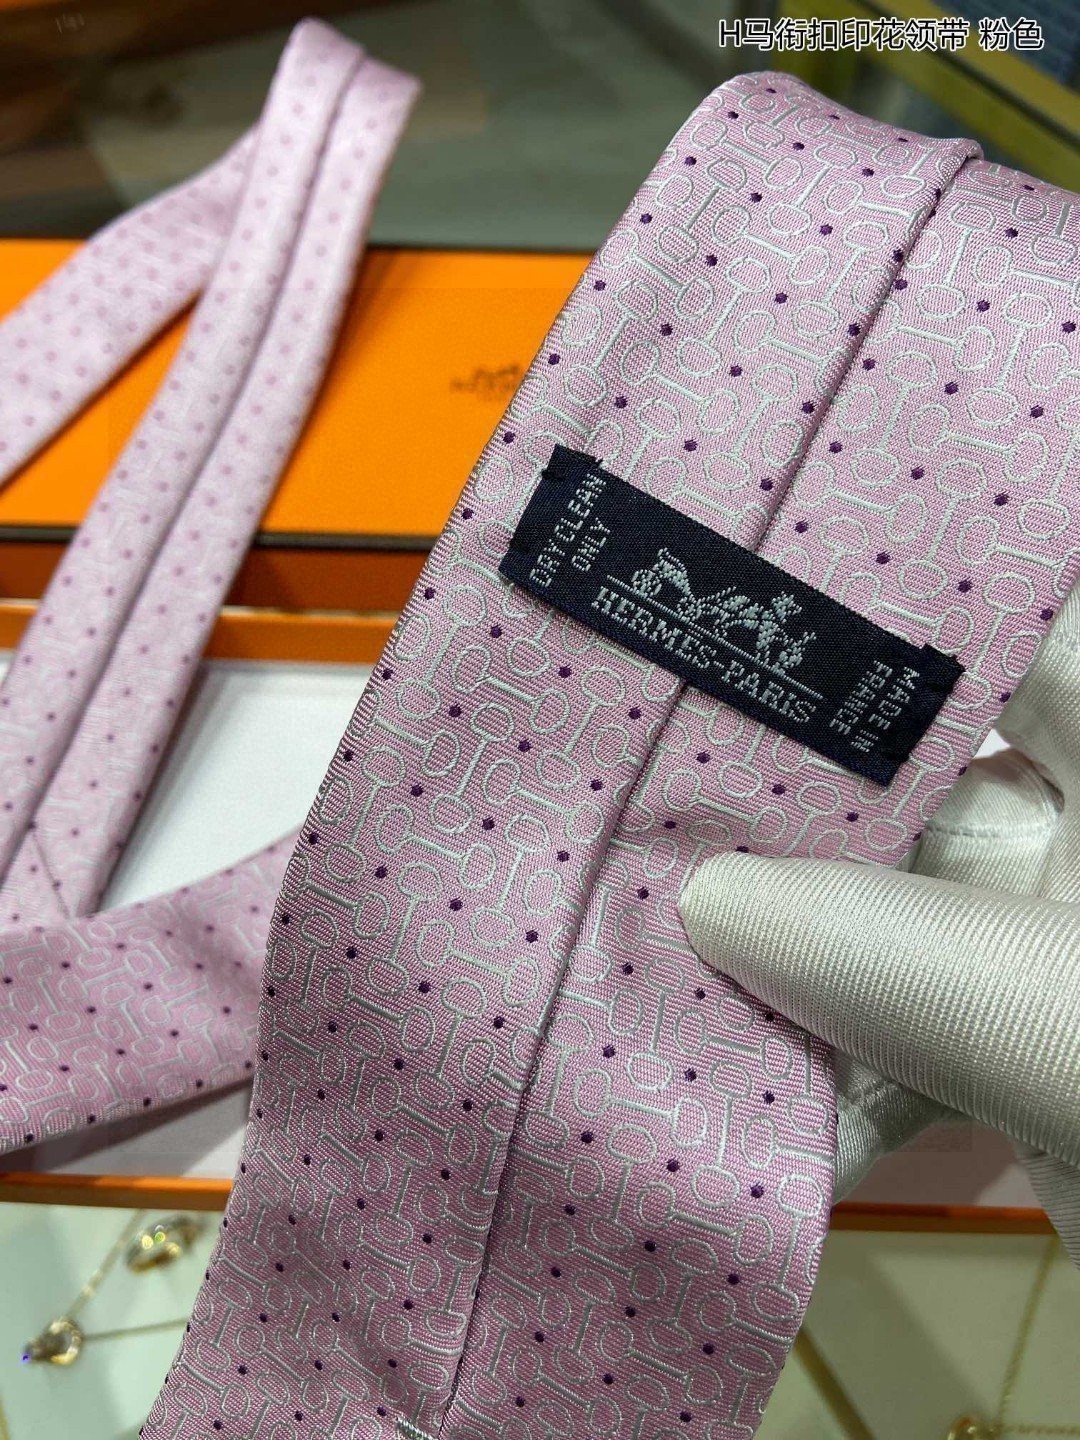 男士新款领带系列H马衔扣印花领带稀有